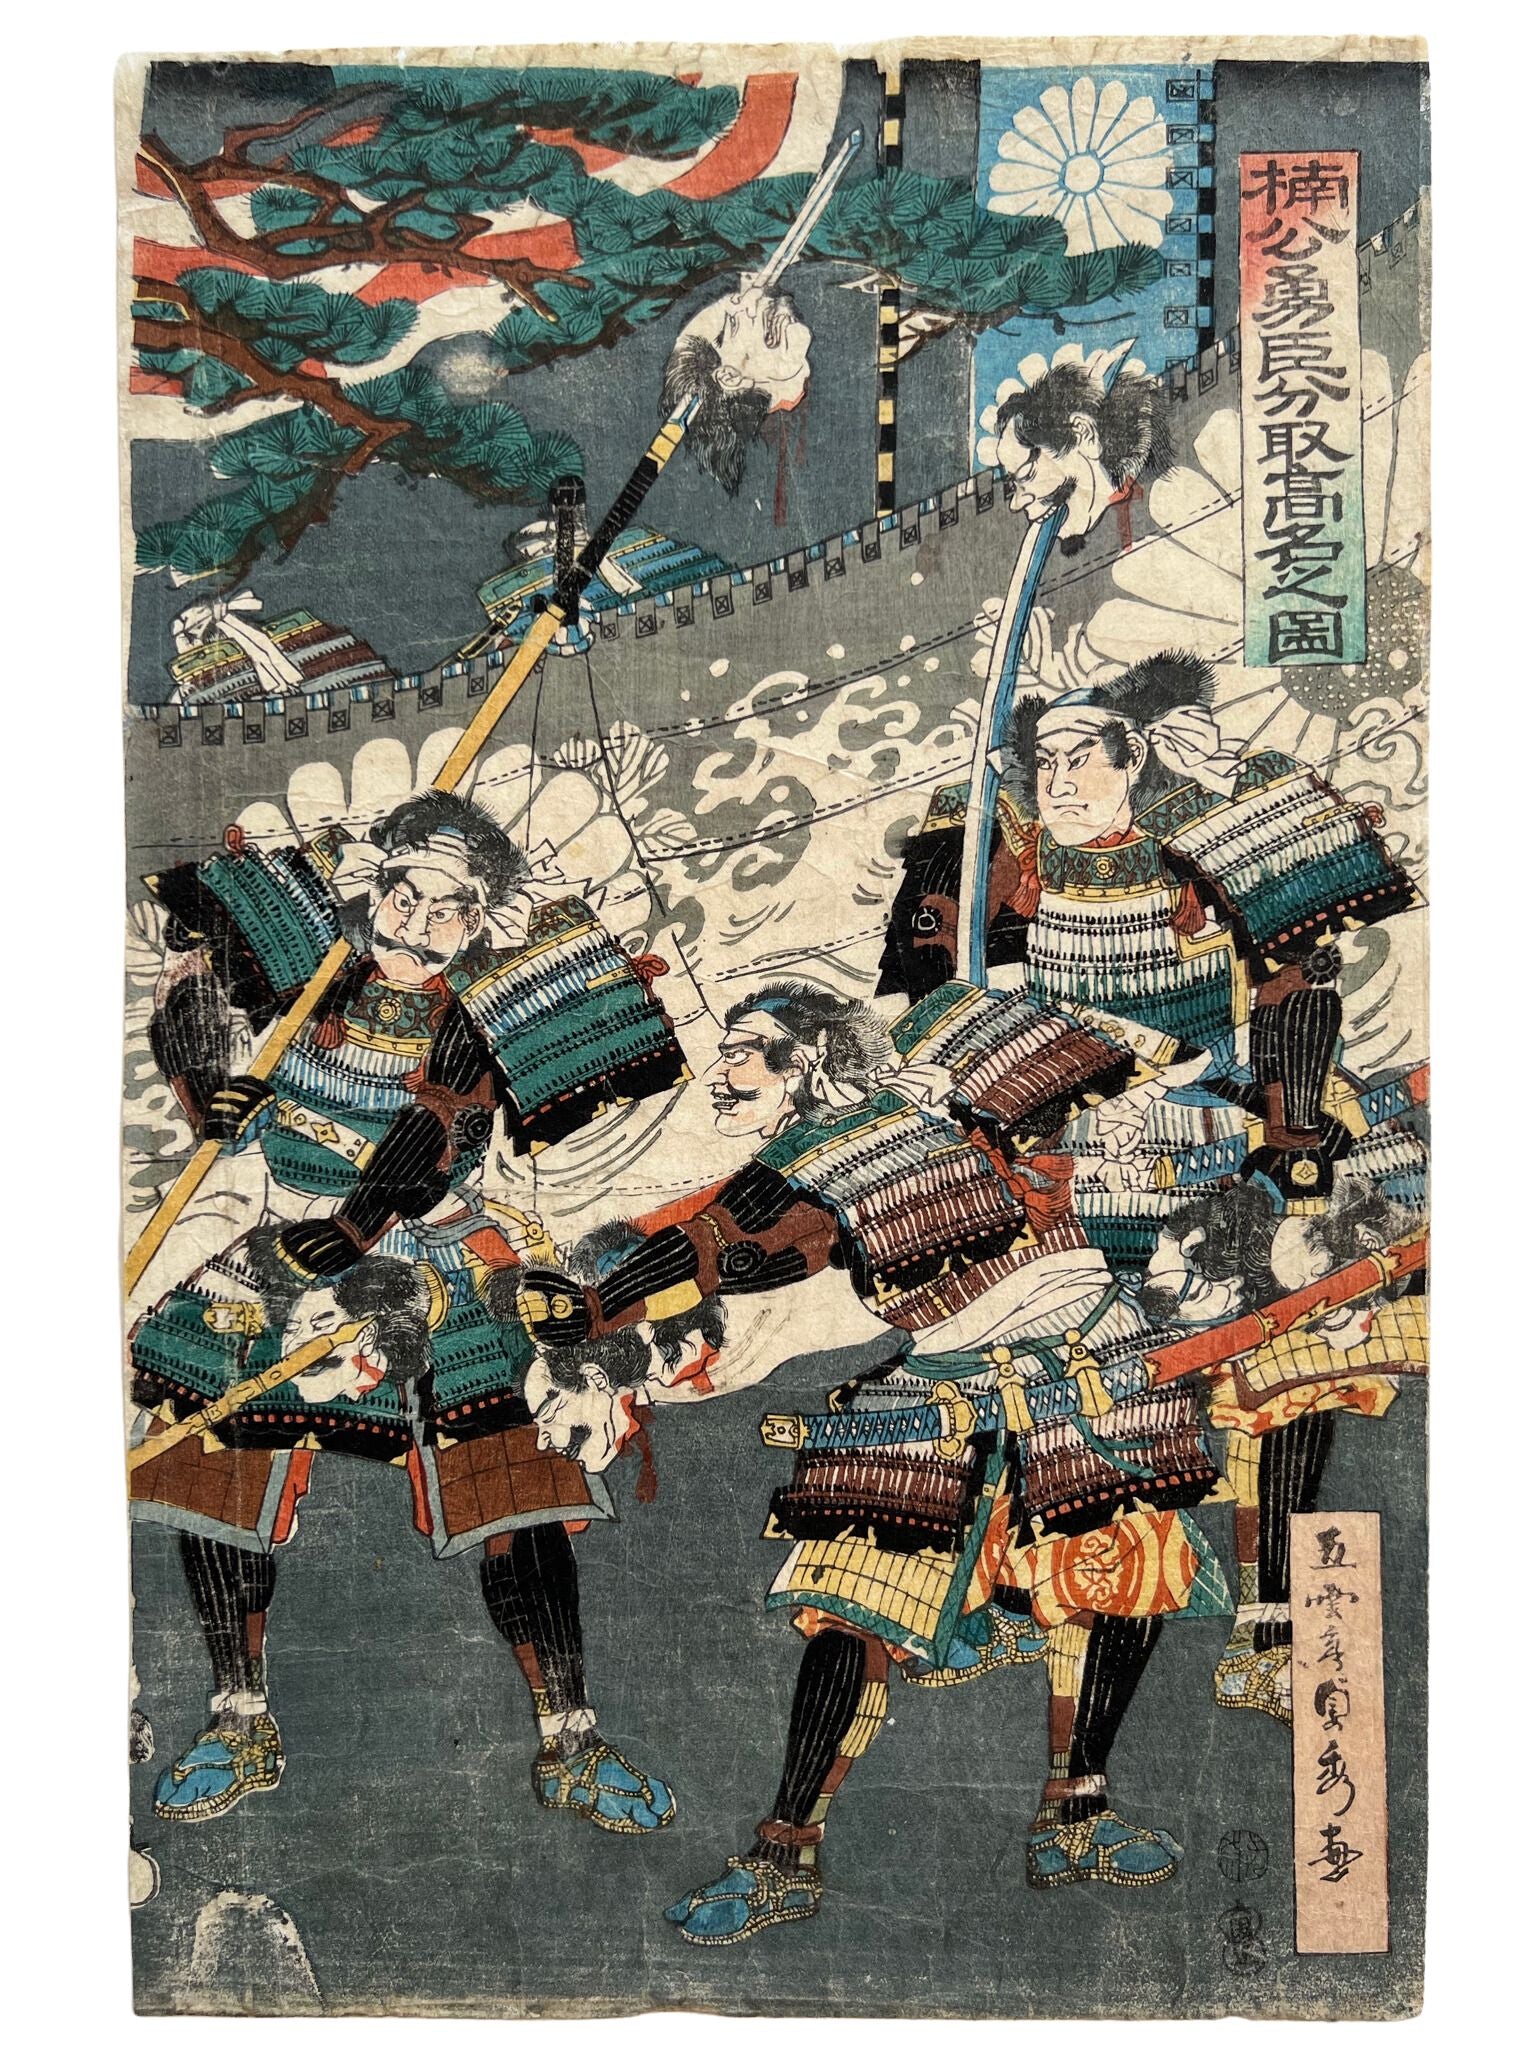 triptyque estampe japonaise samouraï portant des têtes coupées au bout de leurs lances, partie droite, 3 samouraï avec des têtes embrochées dans leurs lances